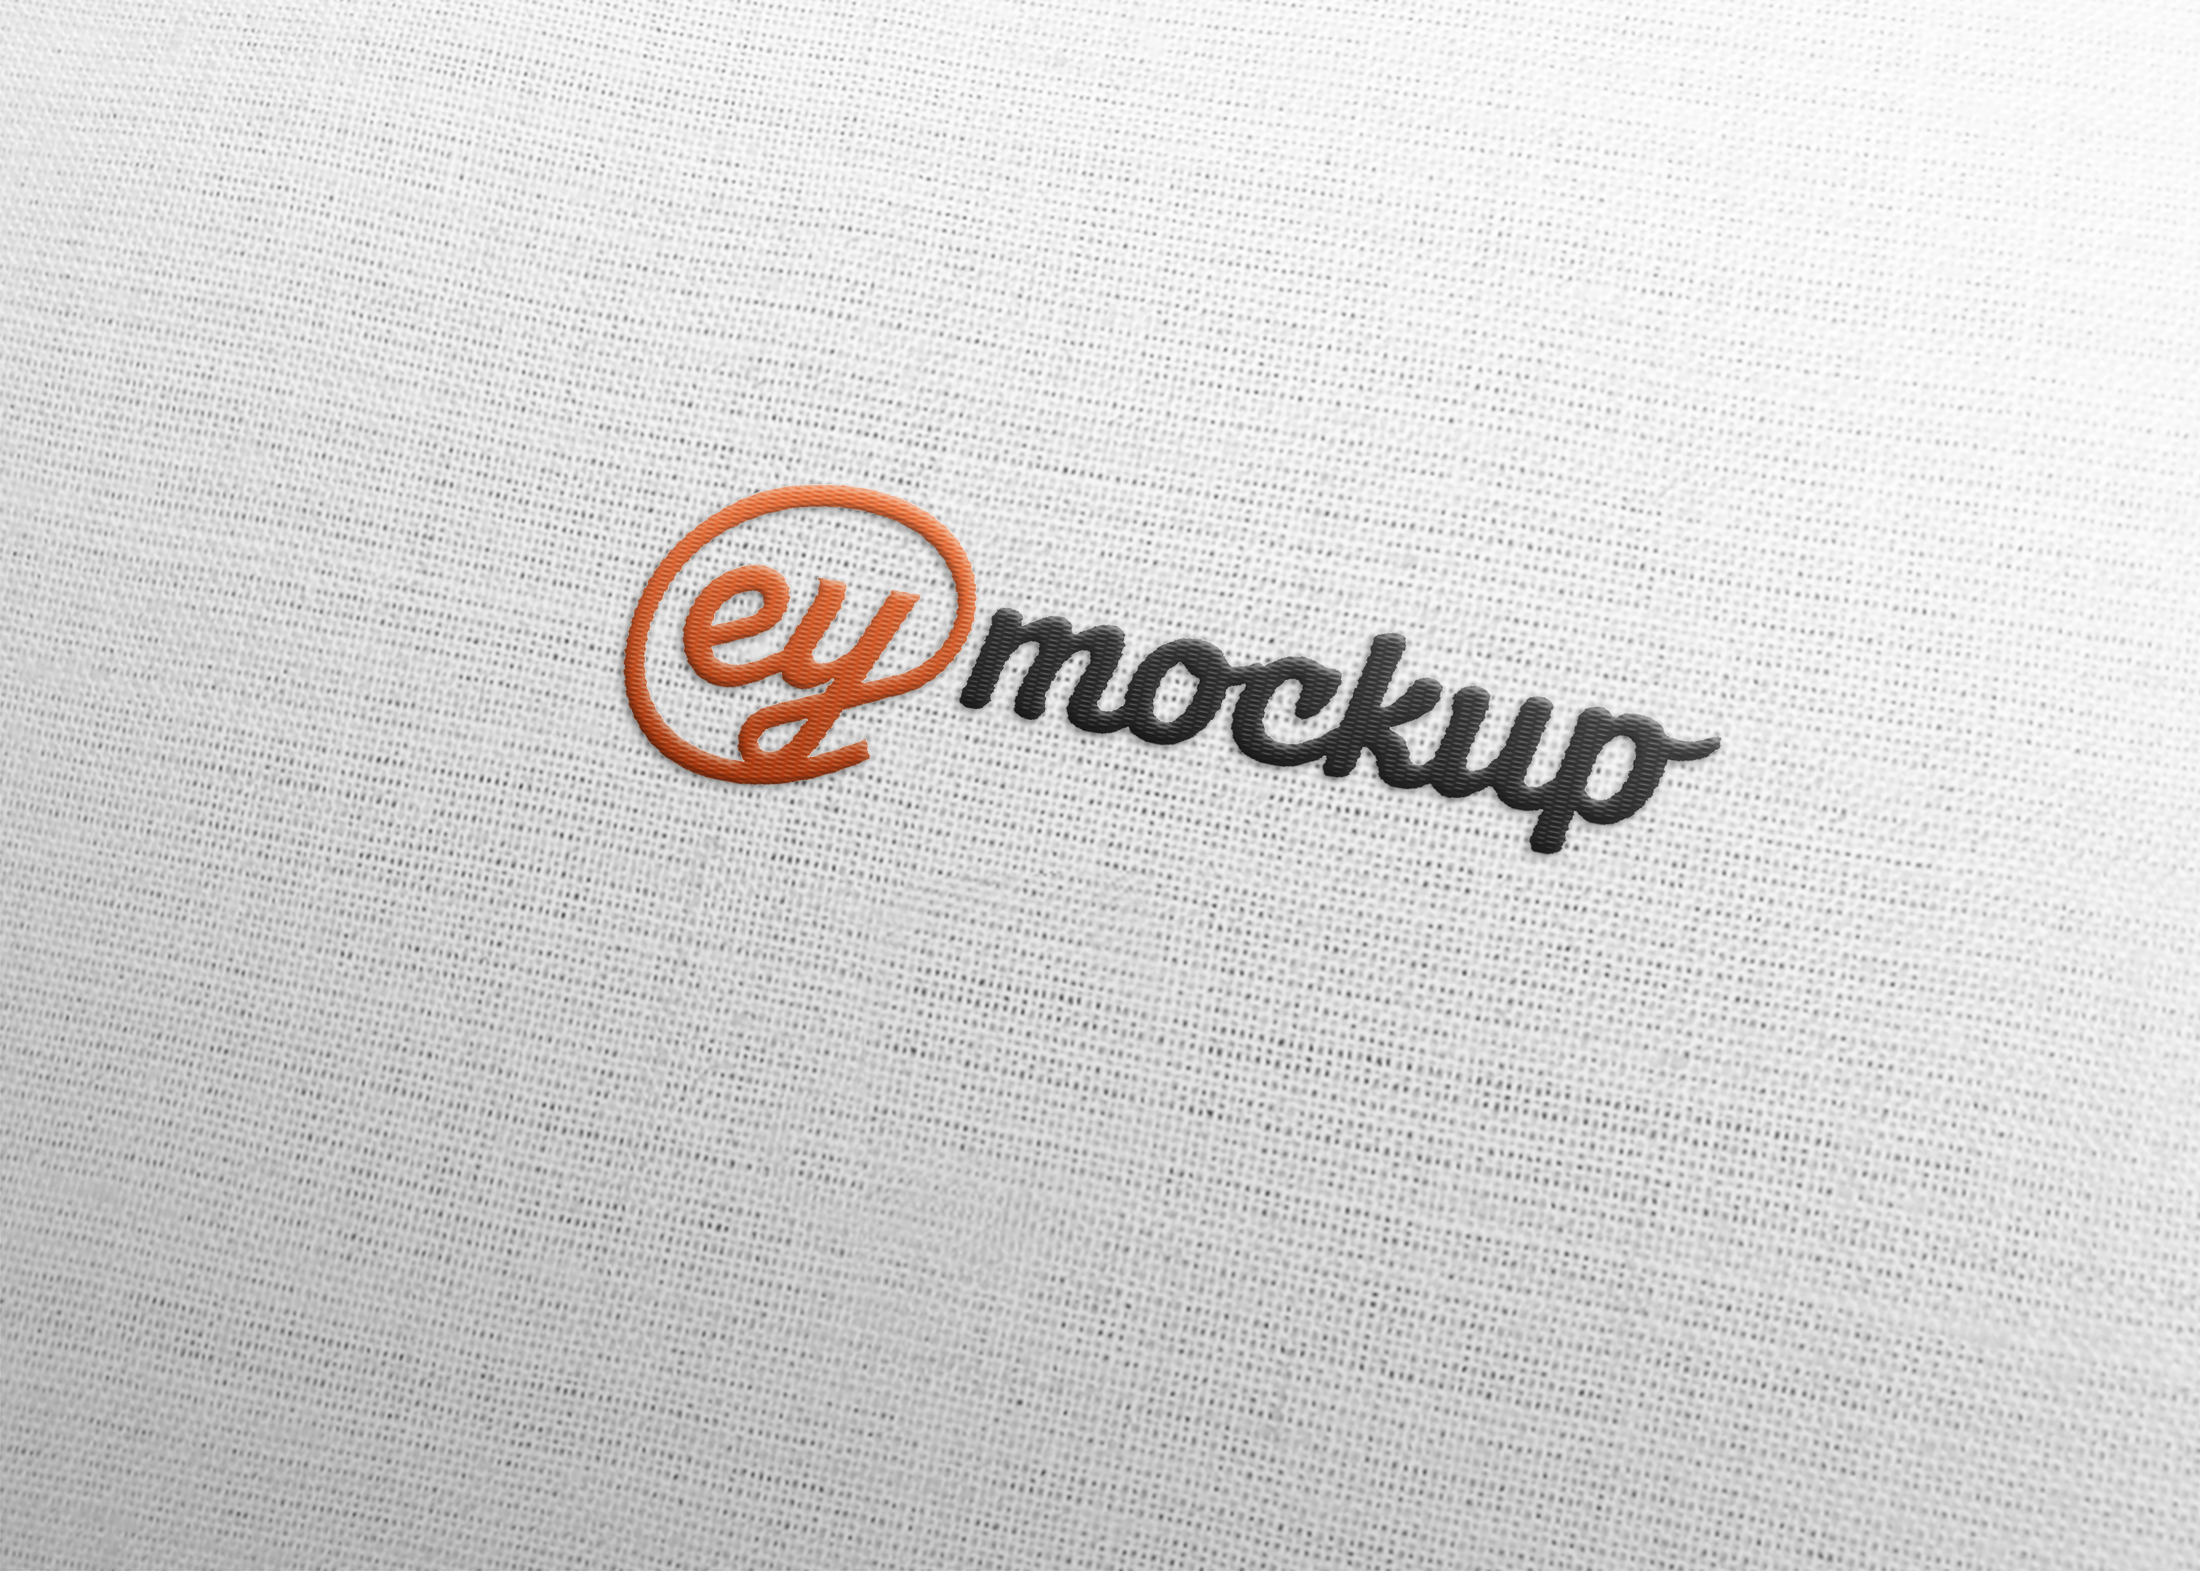 eymockup Free Fabric Logo Mock-up